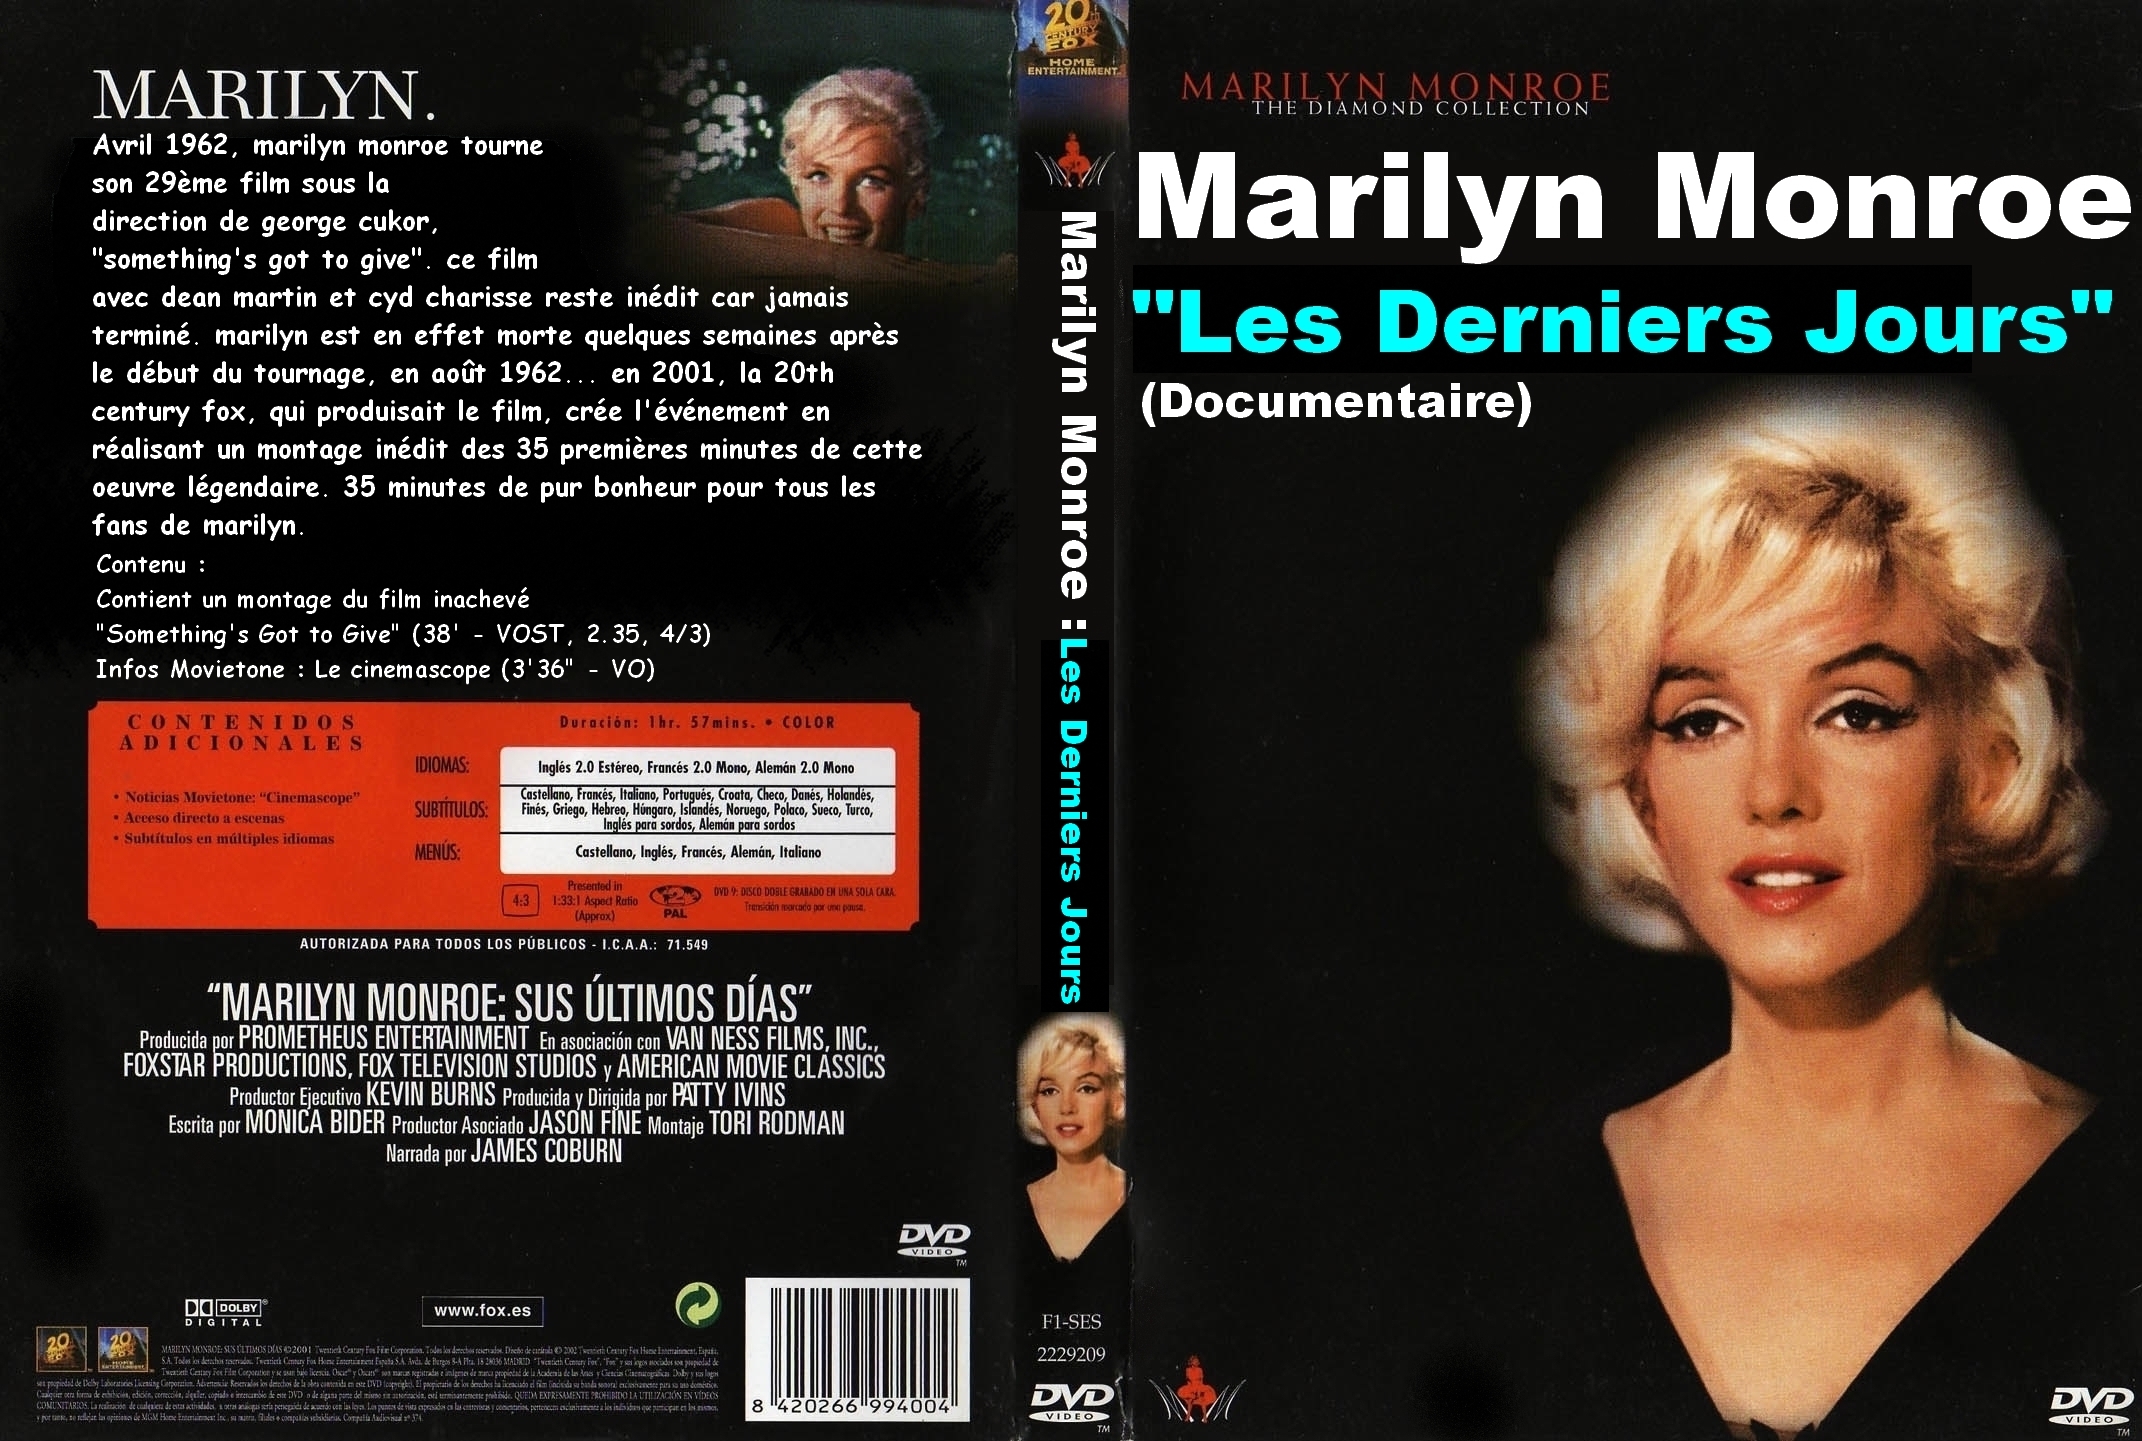 Jaquette DVD Marilyn Monroe Les Derniers Jours custom